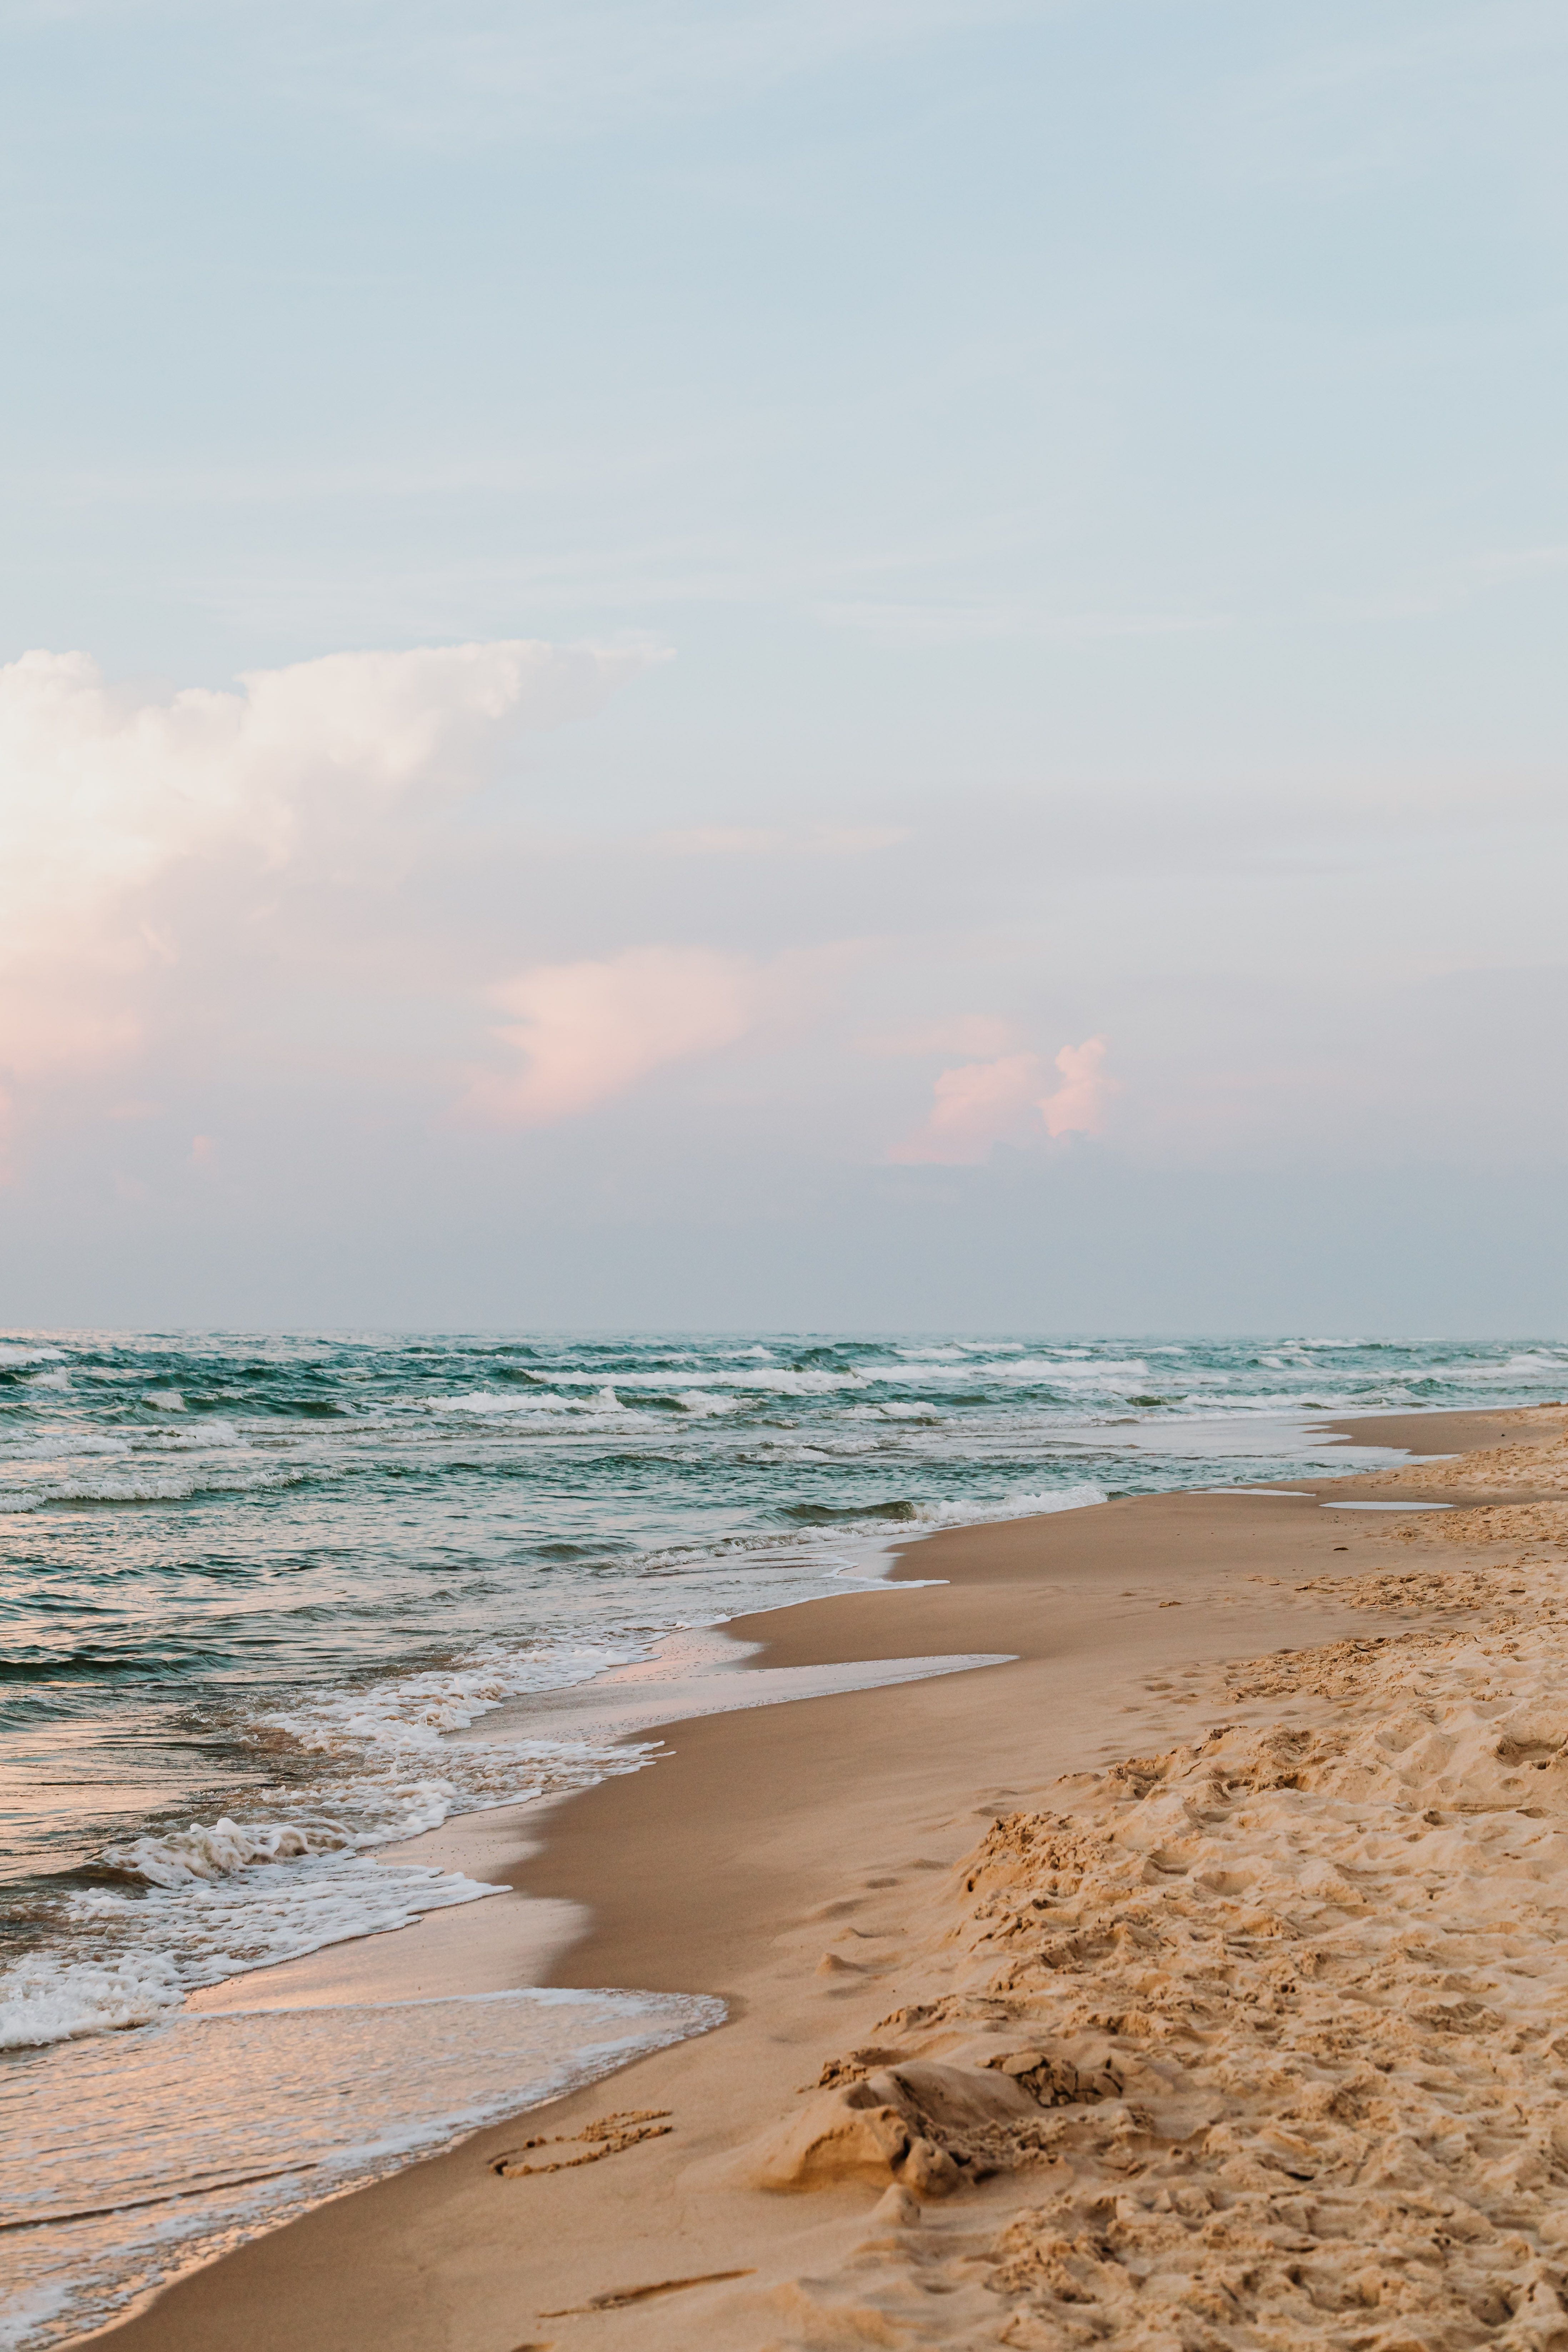  Meer Und Strand Hintergrundbild 4390x6585. Kostenloses Foto zum Thema: blauer himmel, horizont, landschaftlich, meer, meeresküste, natur, ozean, sand, strand, vertikaler schuss, wallpaper, wasser, wellen